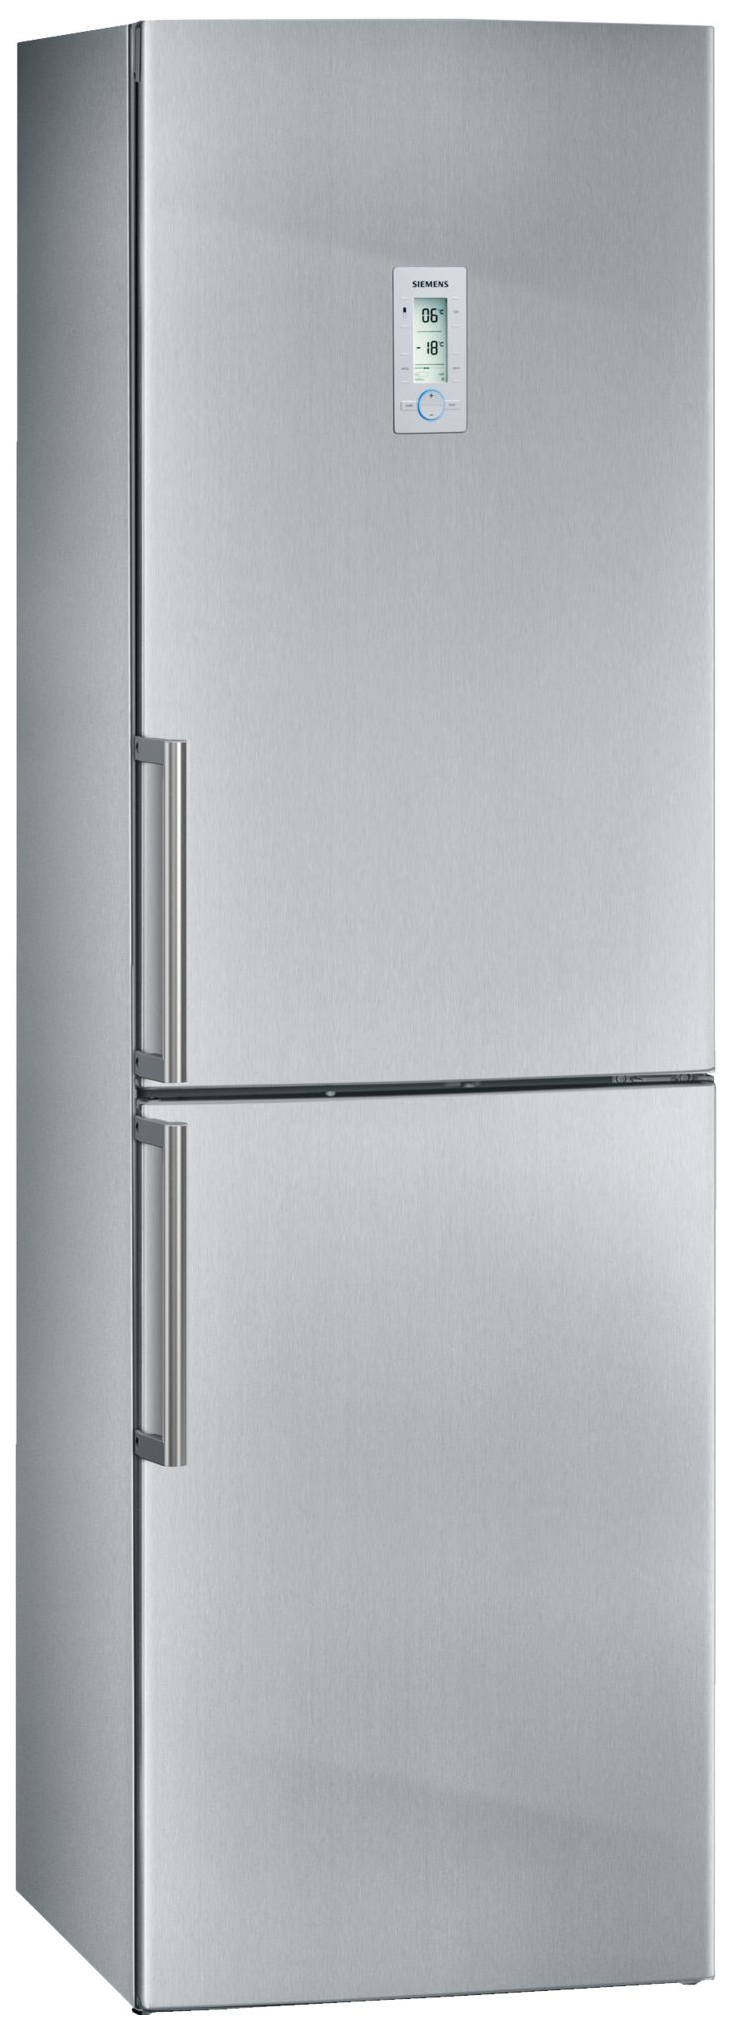 Холодильник Siemens KG39NAI26R серебристый аккумулятор для siemens gigaset sl910 v30145 k1310k x447